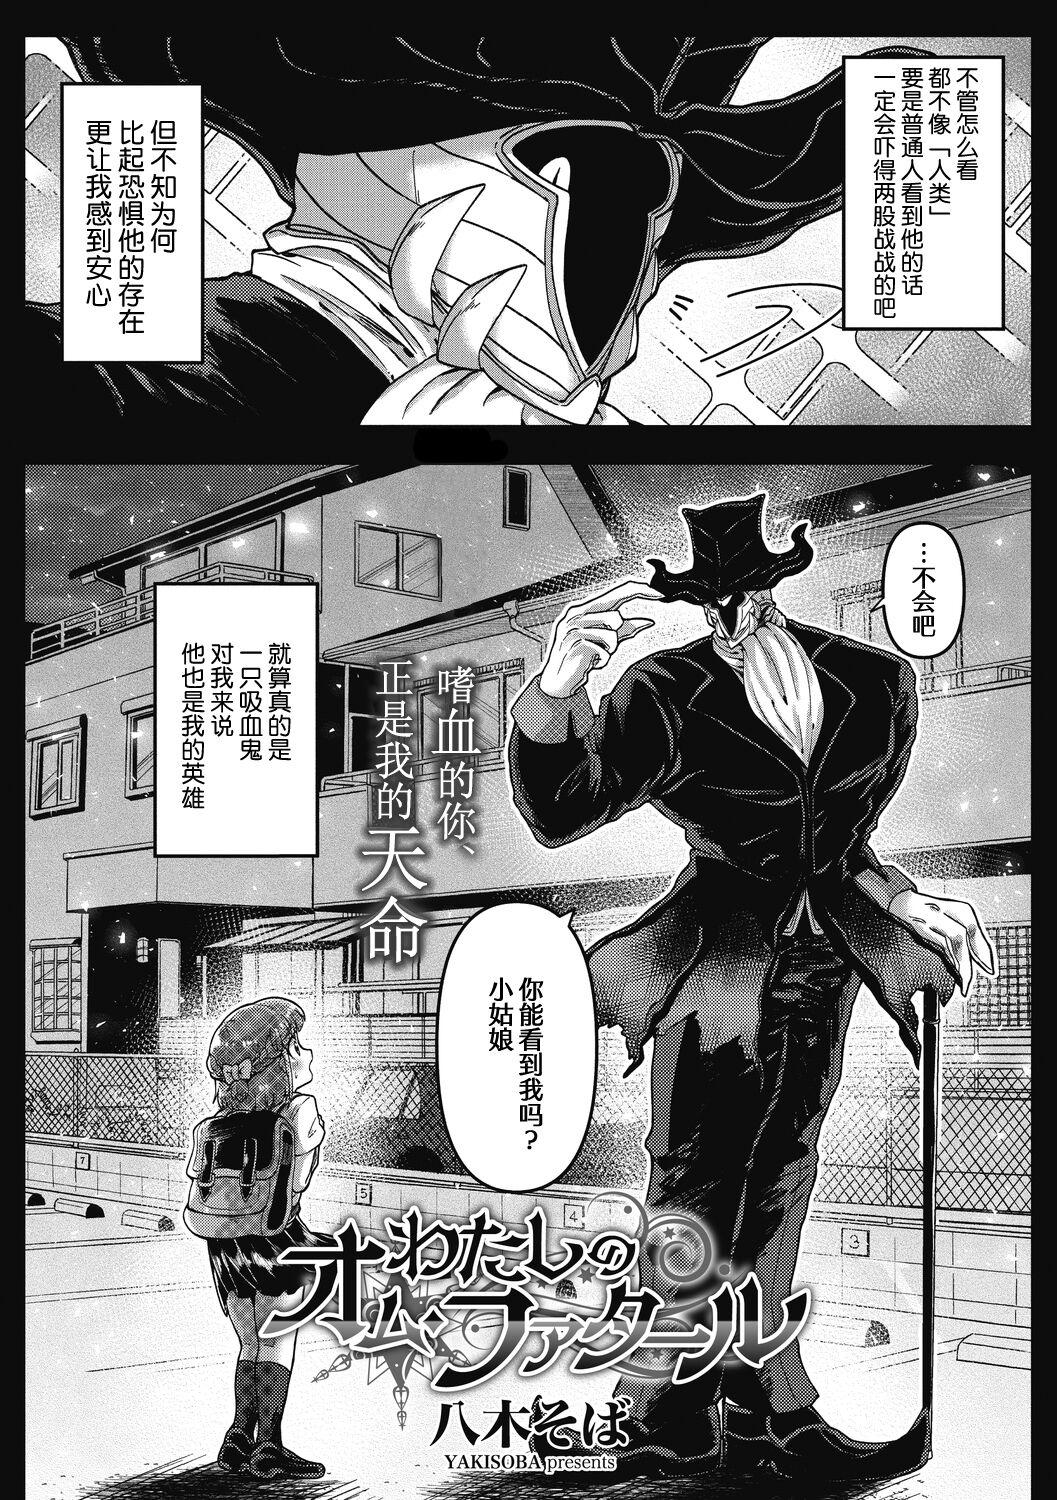 Butt Plug Watashi no Homme Fatale Lady - Page 4